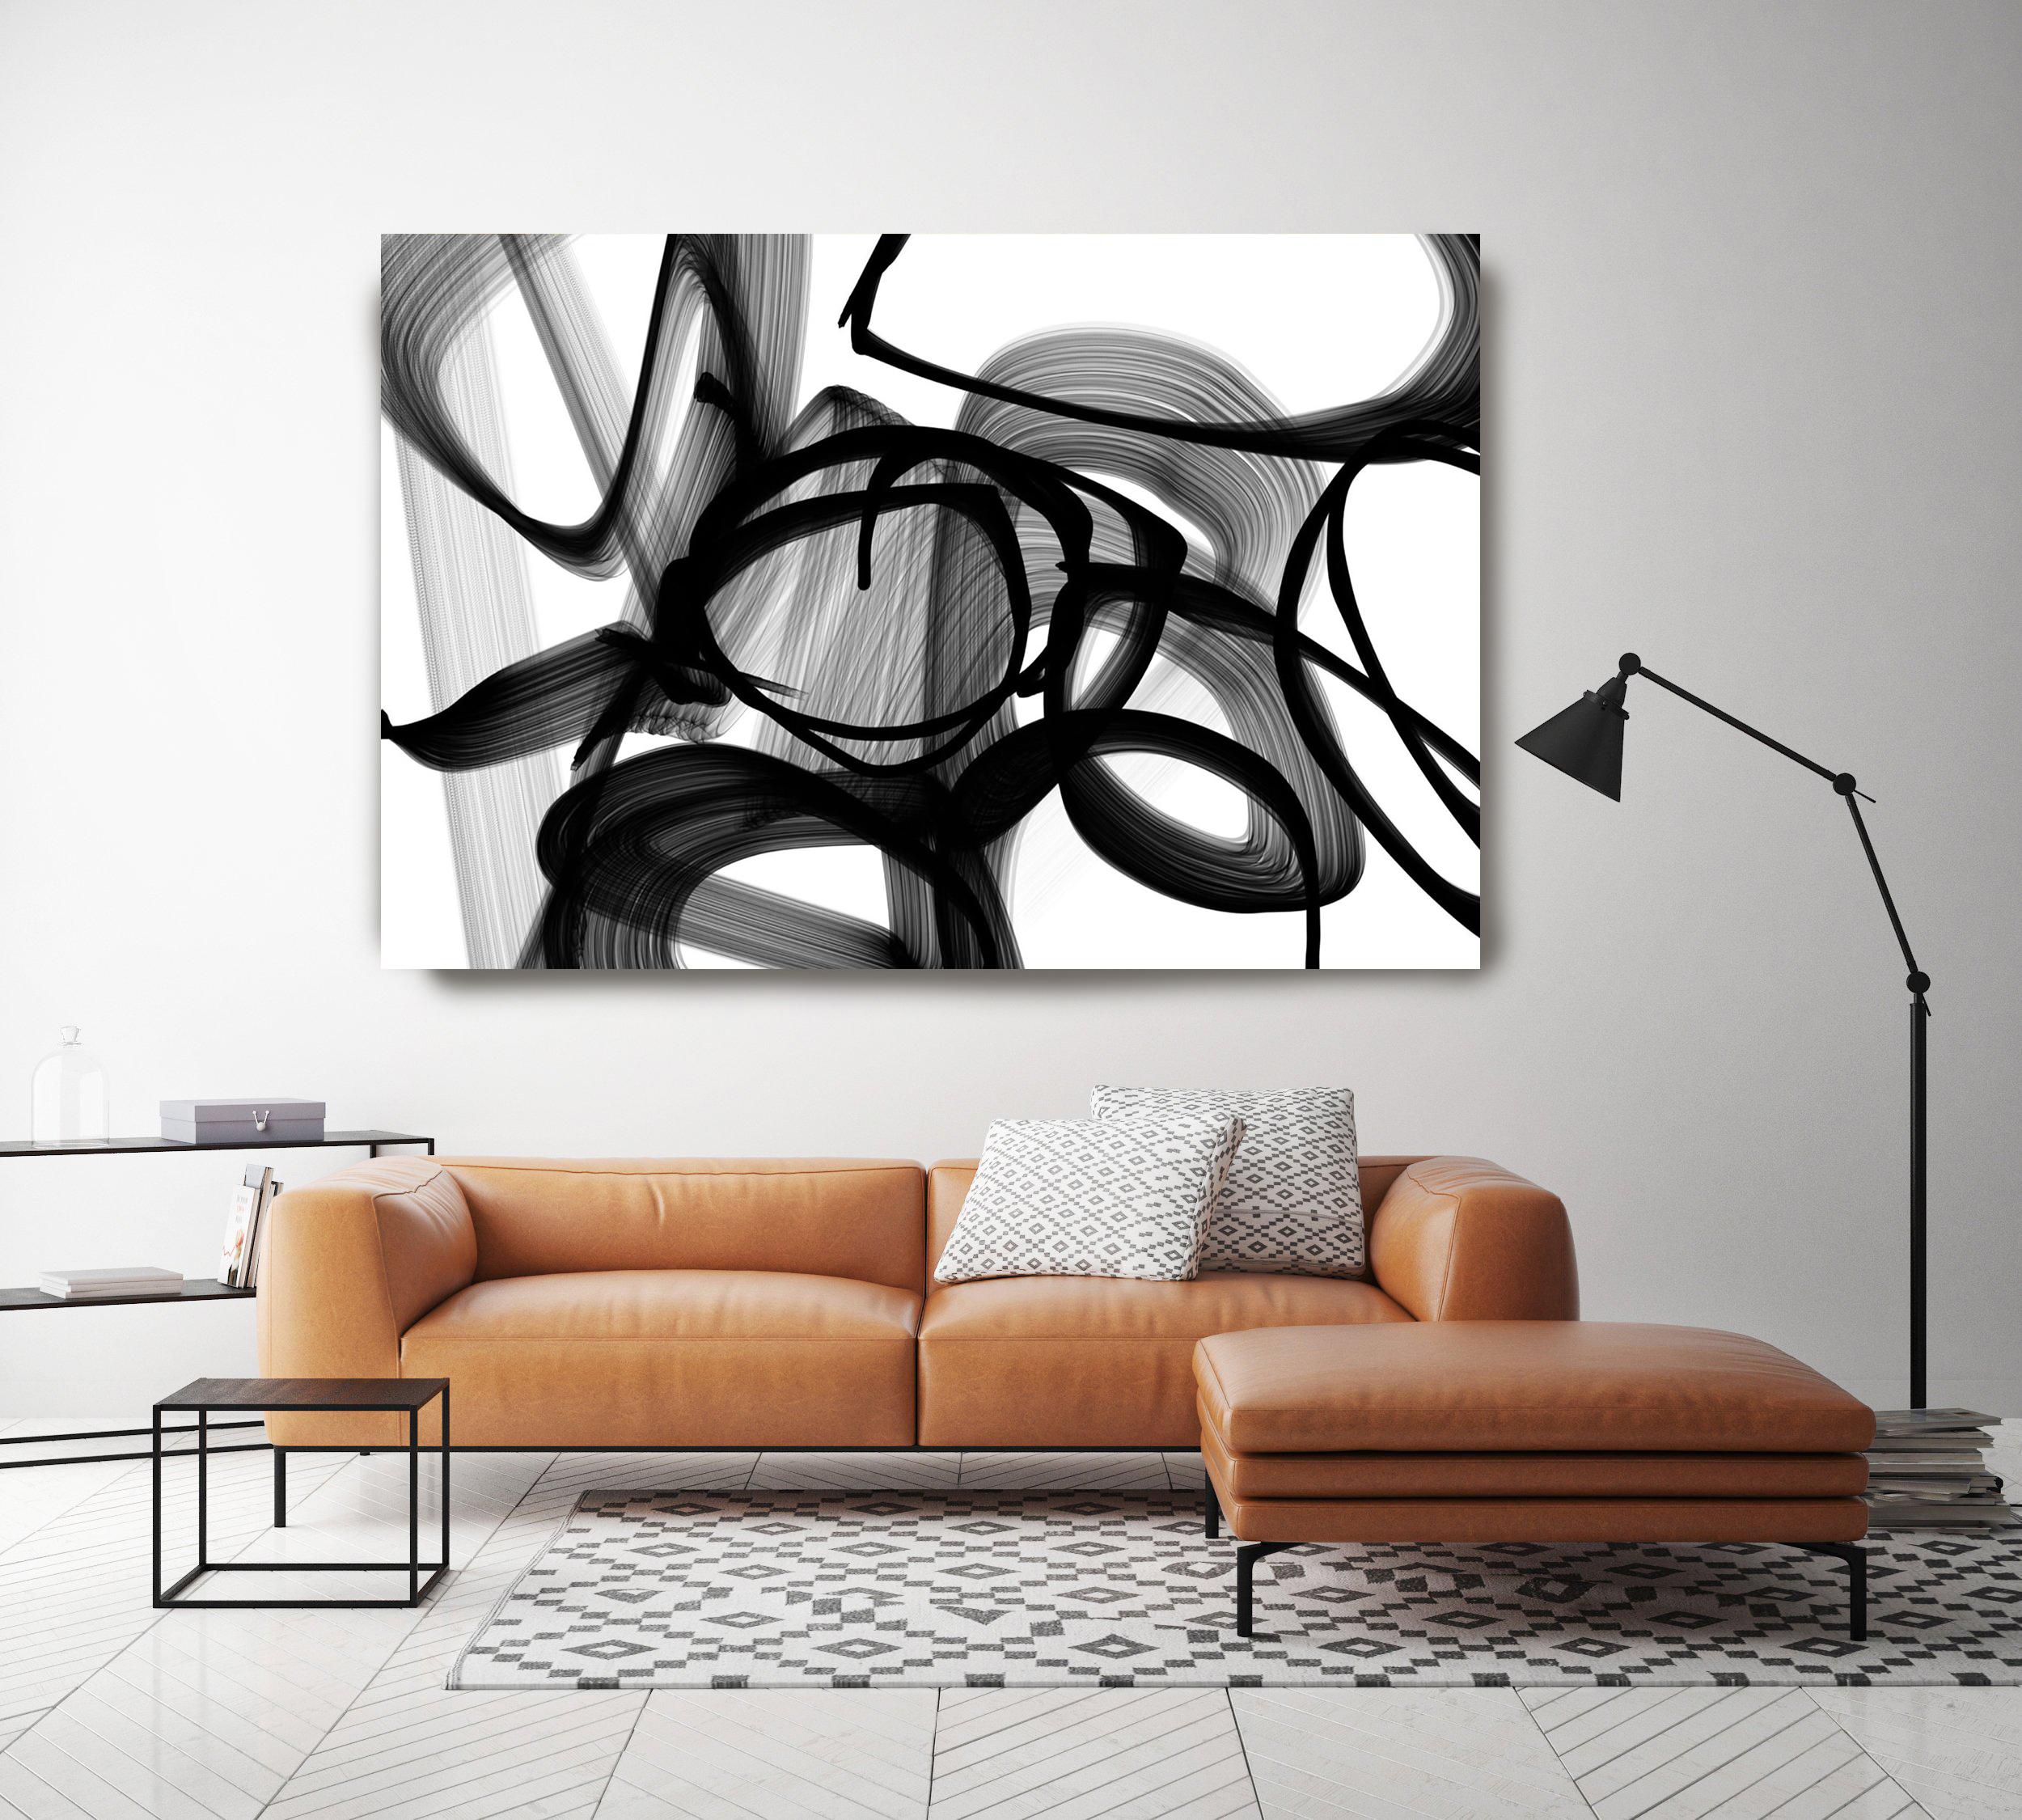 Brushstrokes in Schwarz und Weiß Mixed Media auf Leinwand 60 x 40""  – Mixed Media Art von Irena Orlov